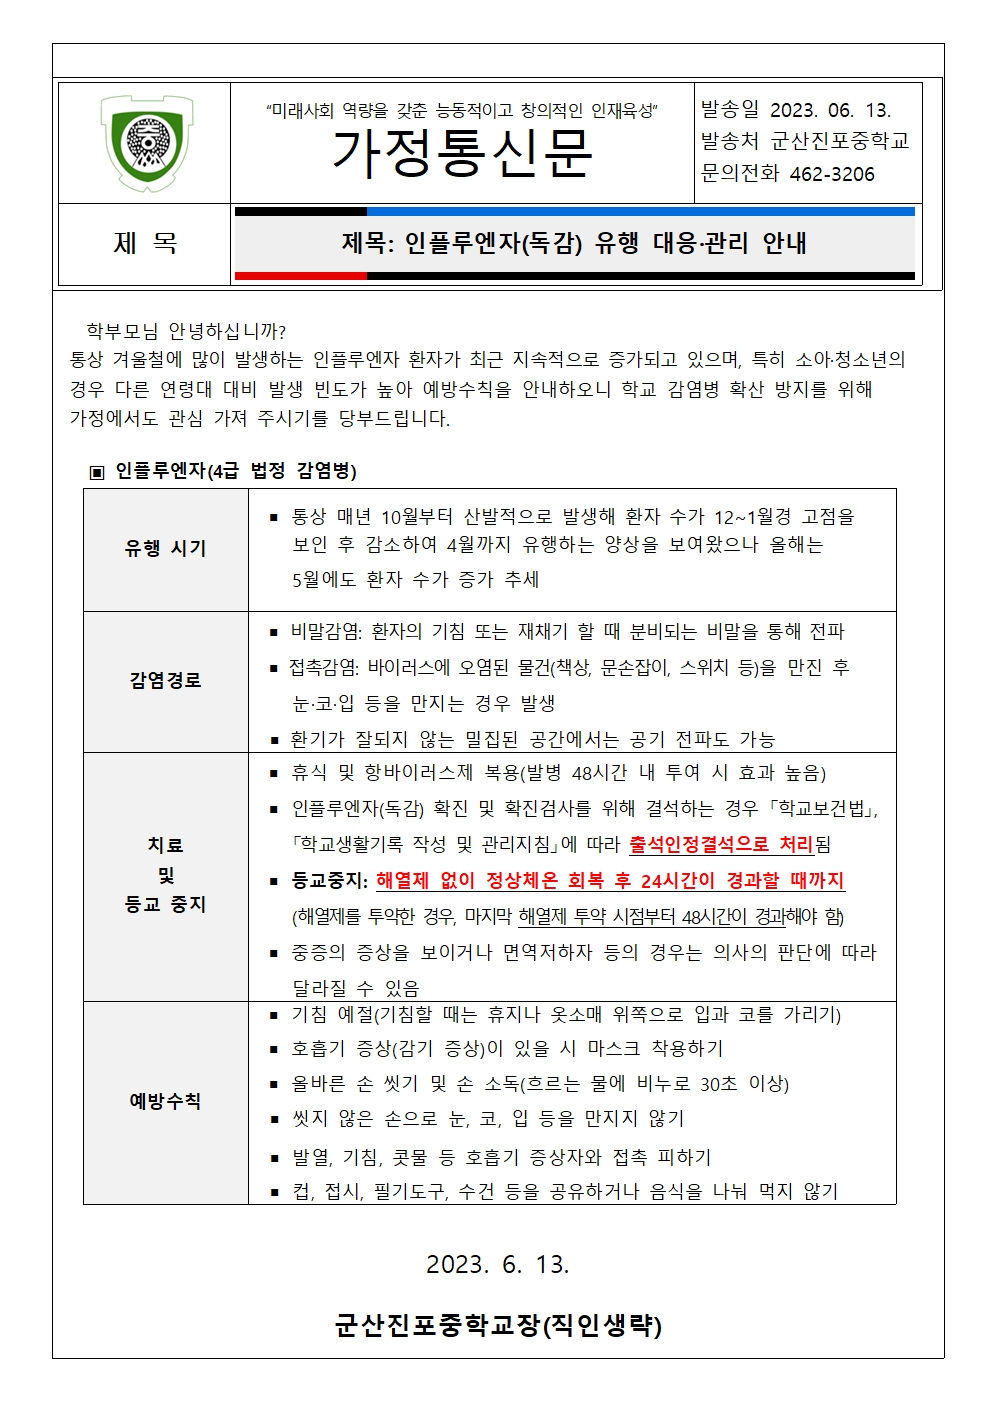 인플루엔자(독감) 유행 대응·관리 안내 가정통신문001